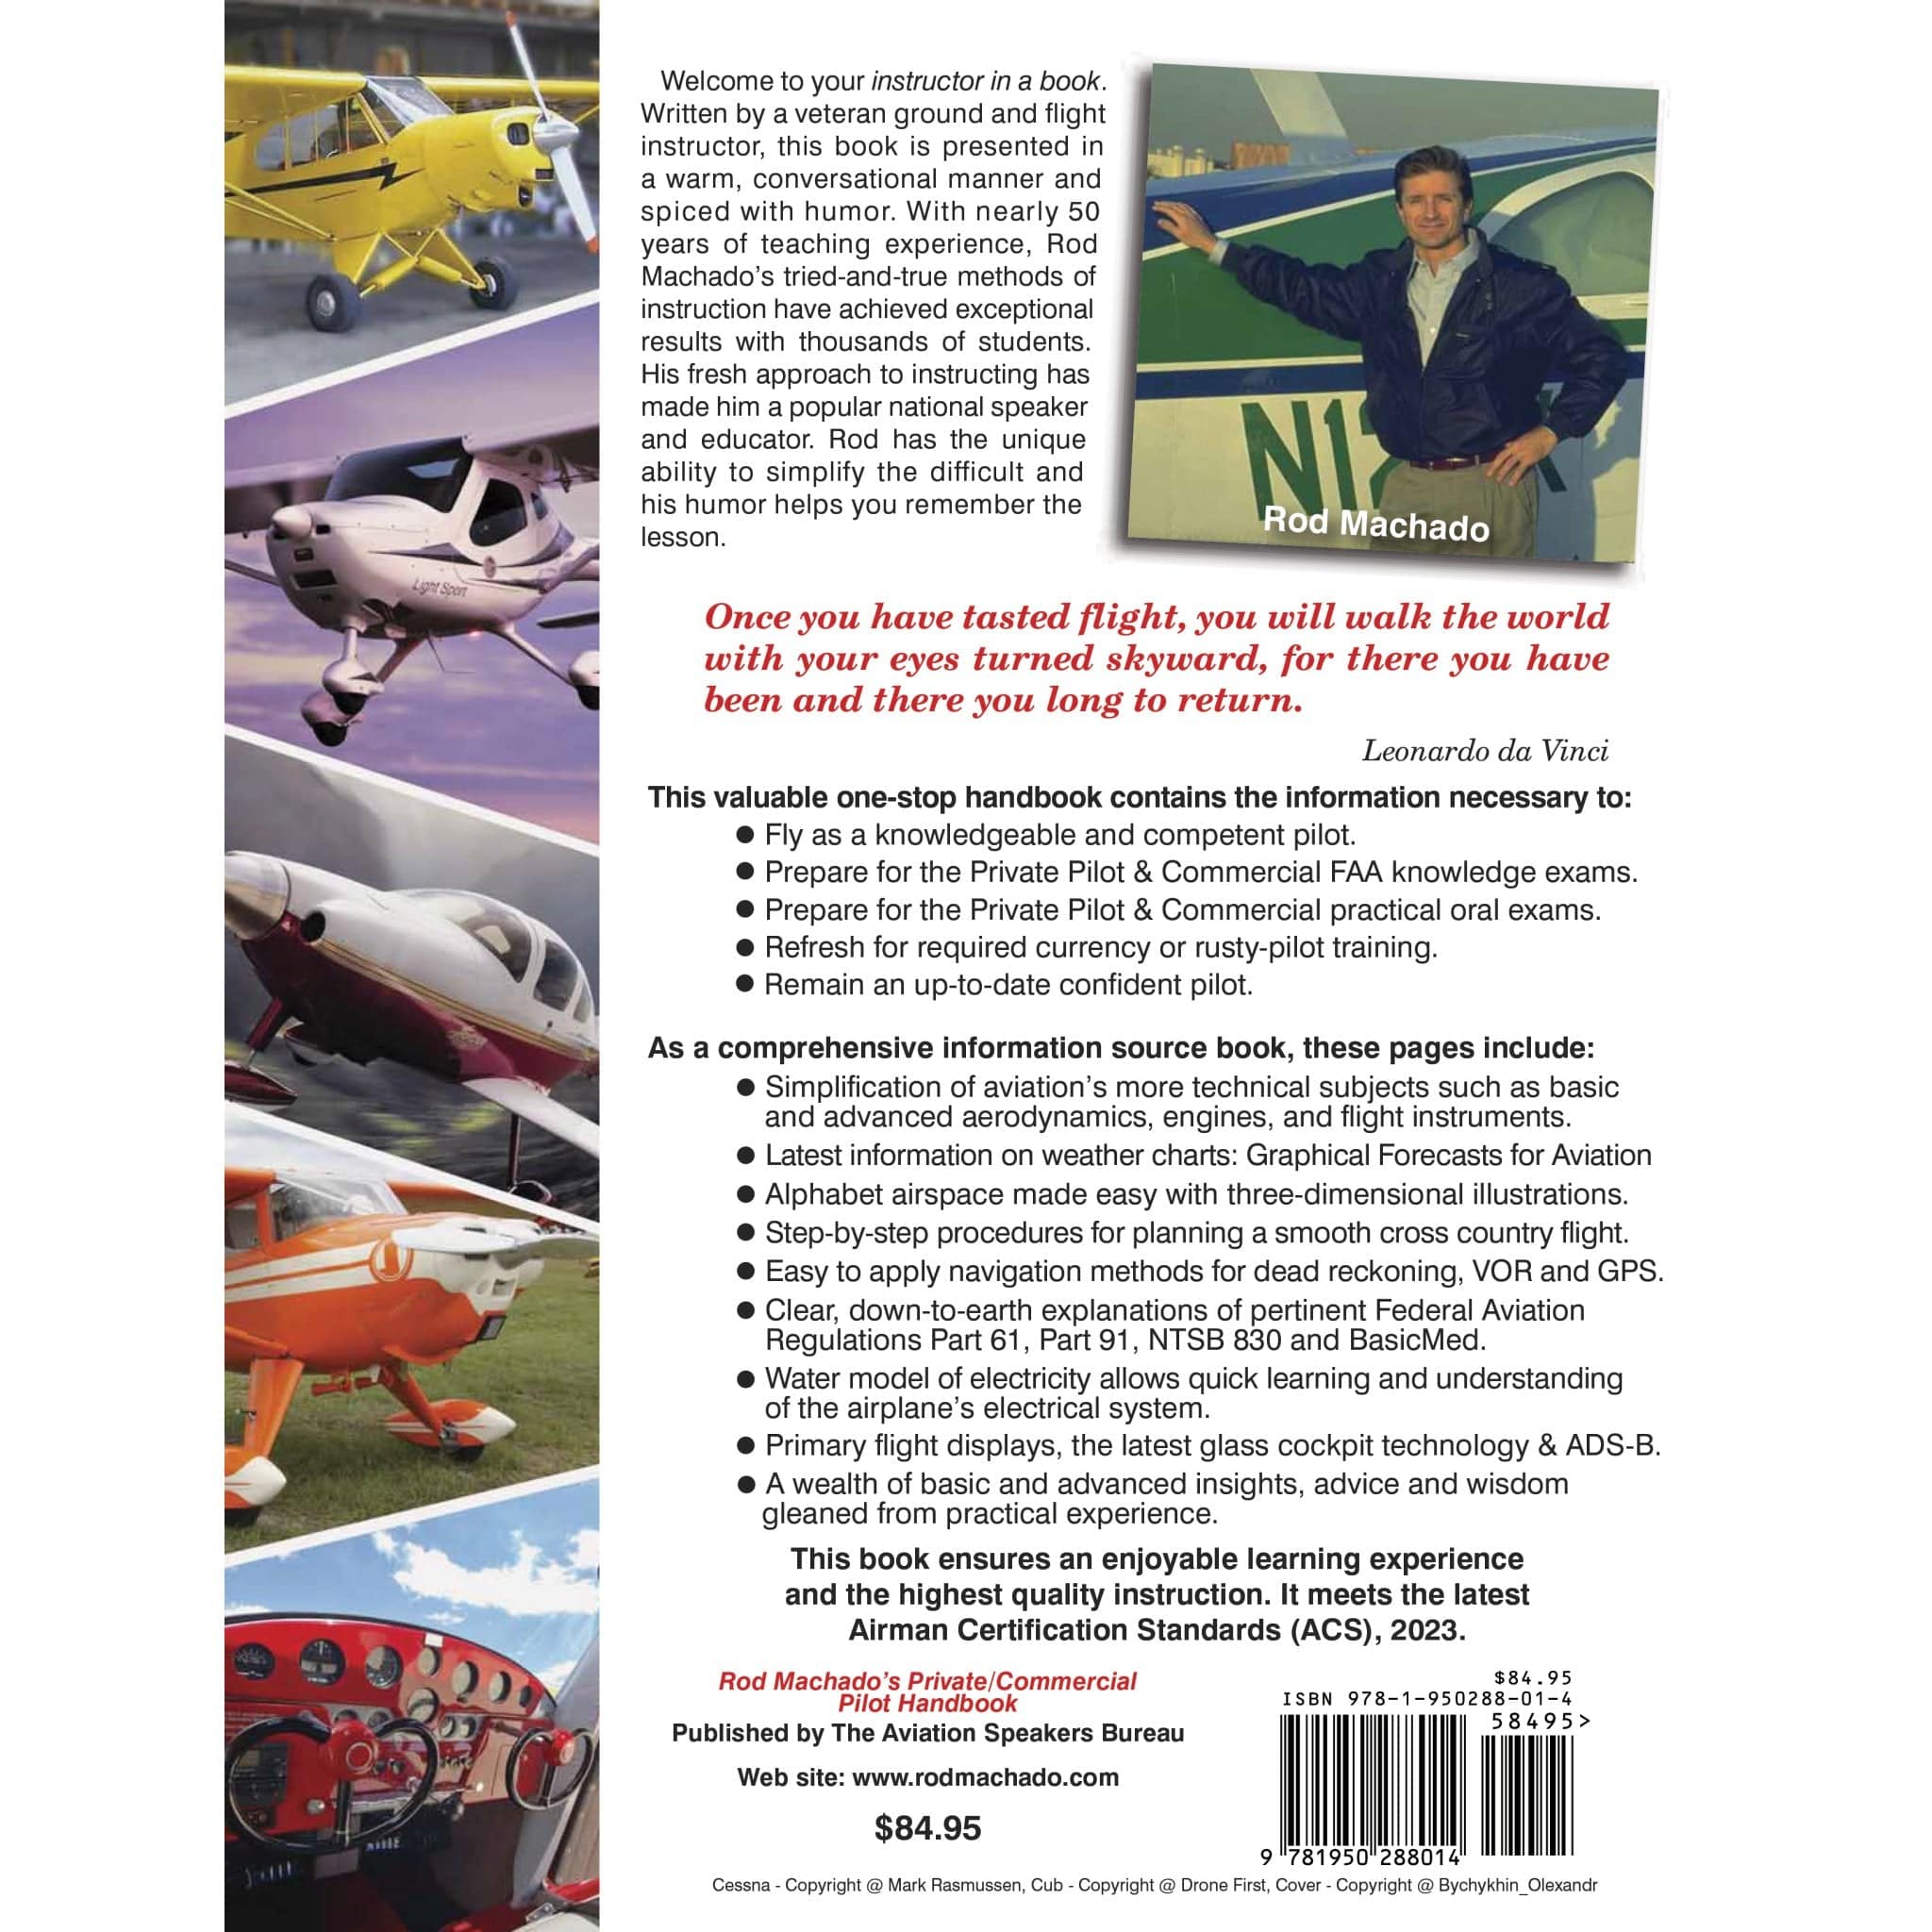 Rod Machado's Private Pilot/Commercial Handbook - PilotMall.com